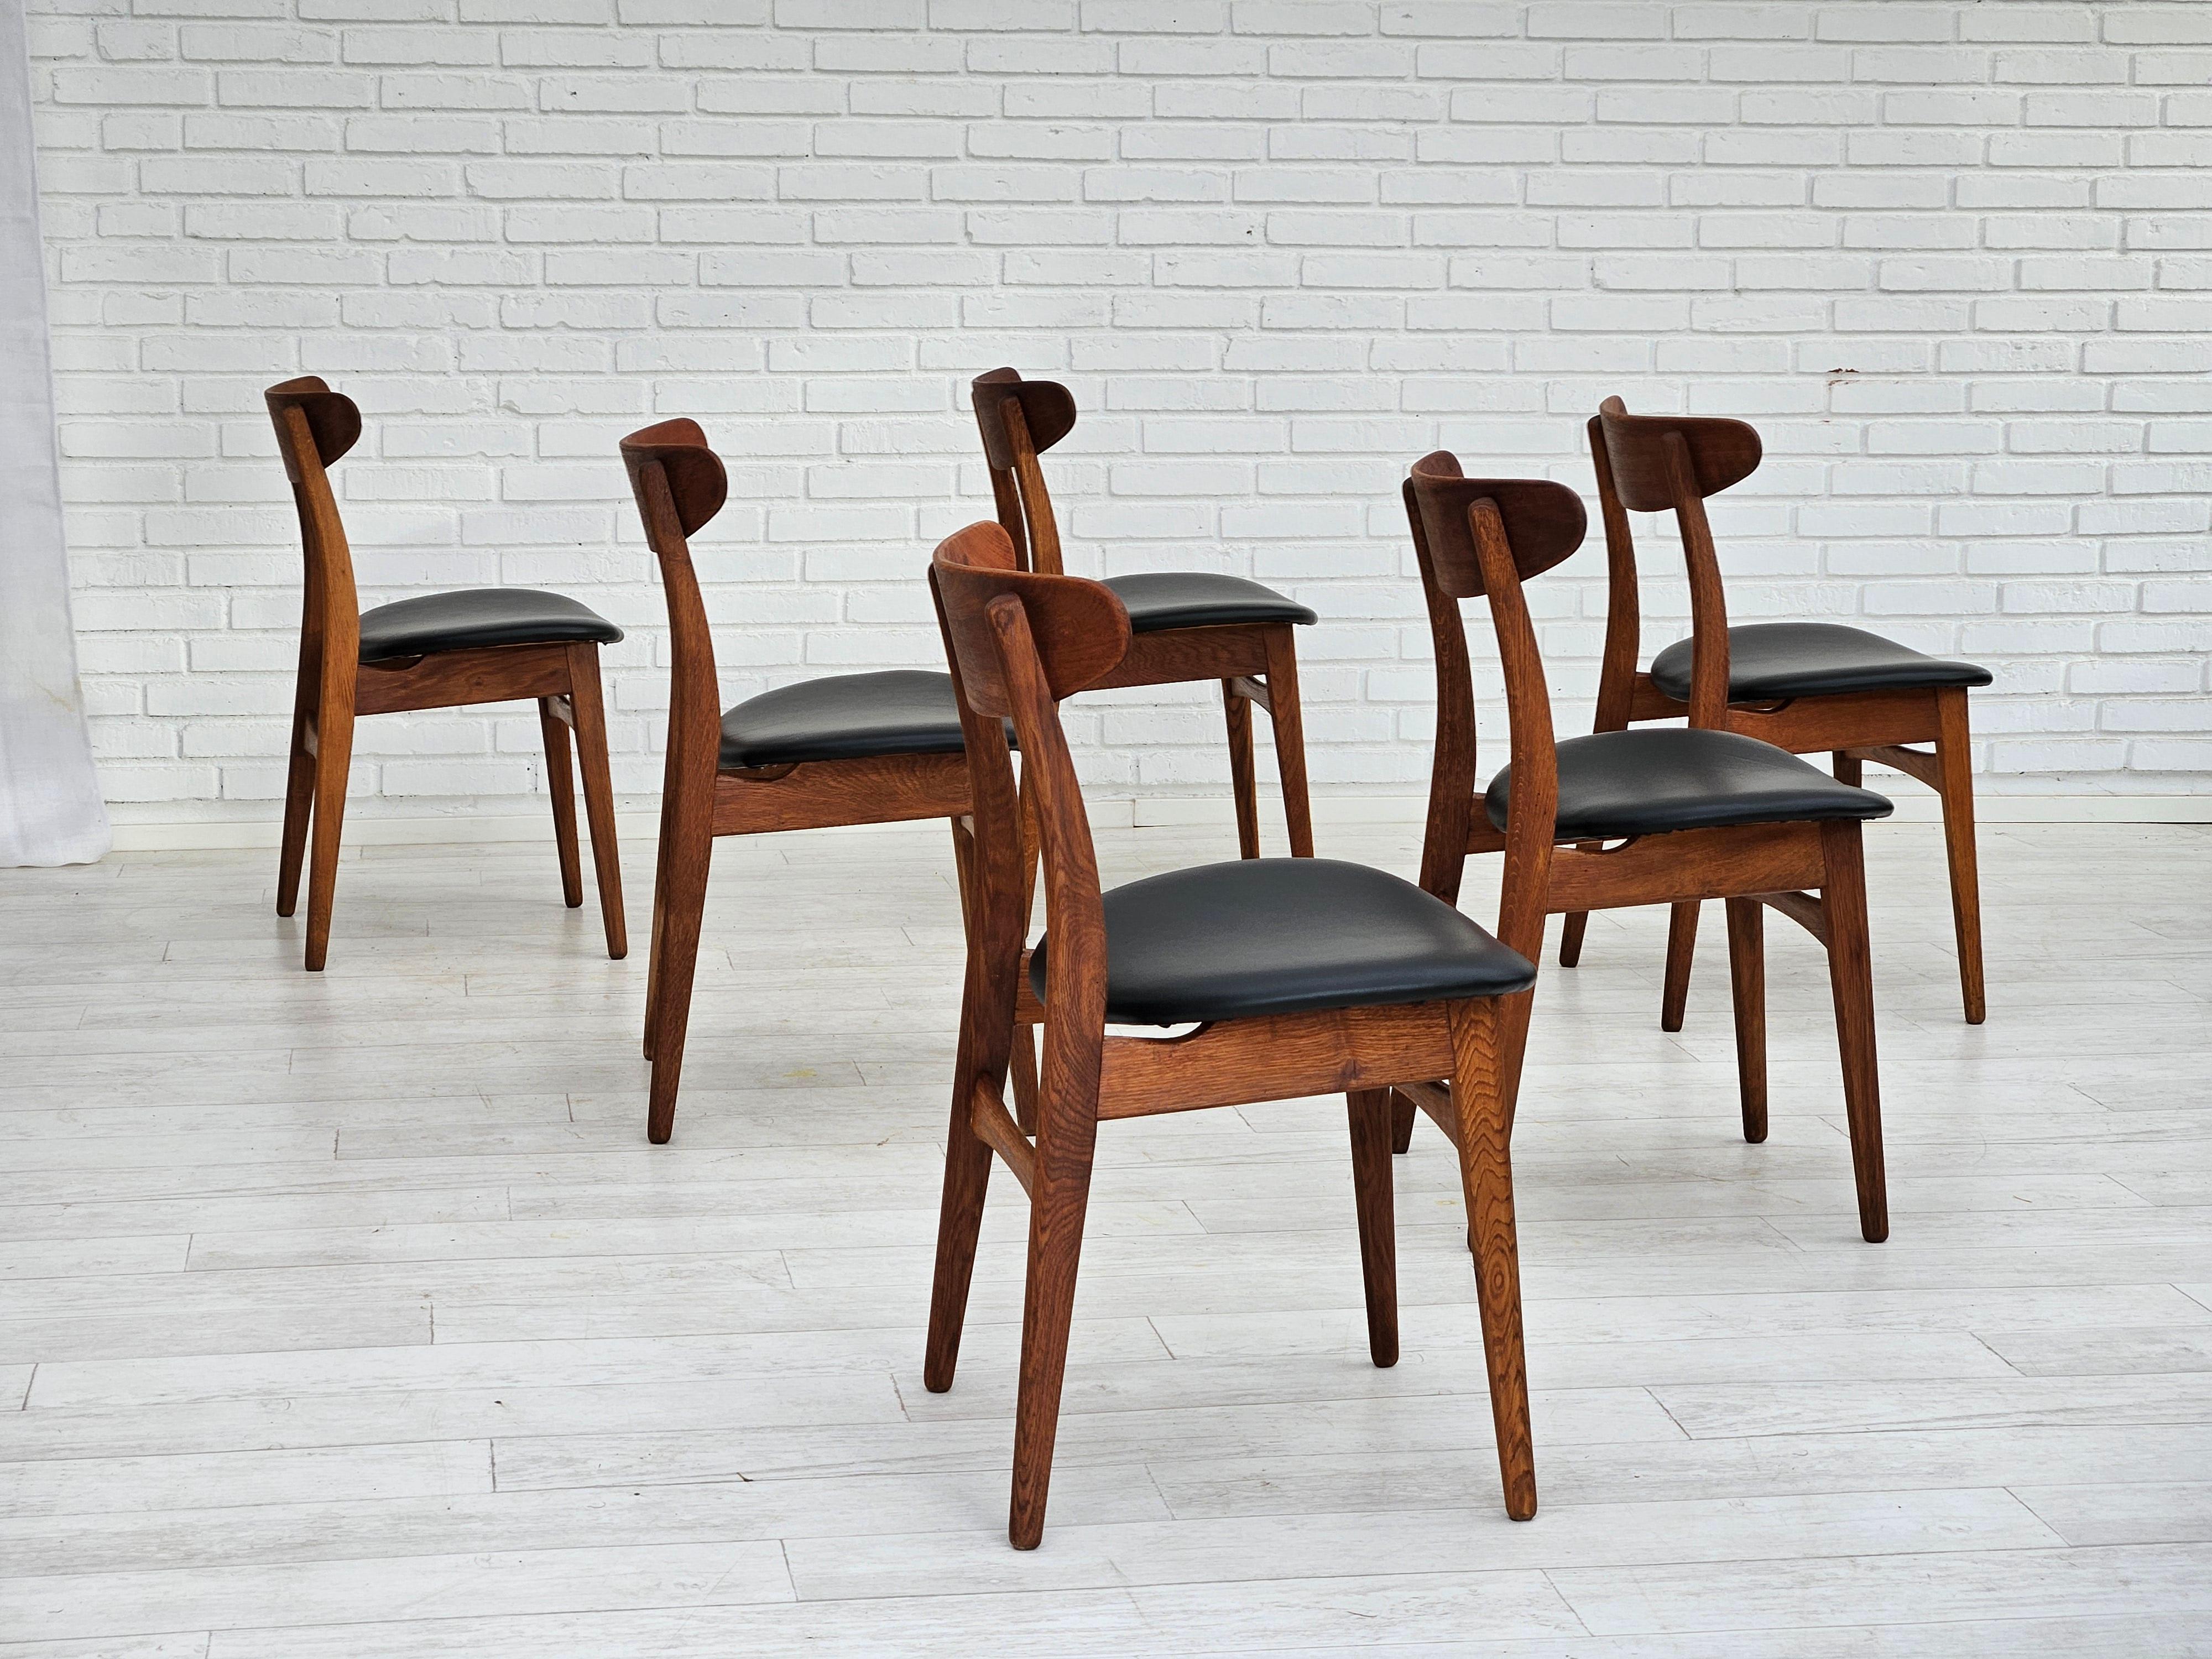 Scandinavian Modern 1960s, Danish design by H.J.Wegner, set of 6 dining chairs model nr.30.